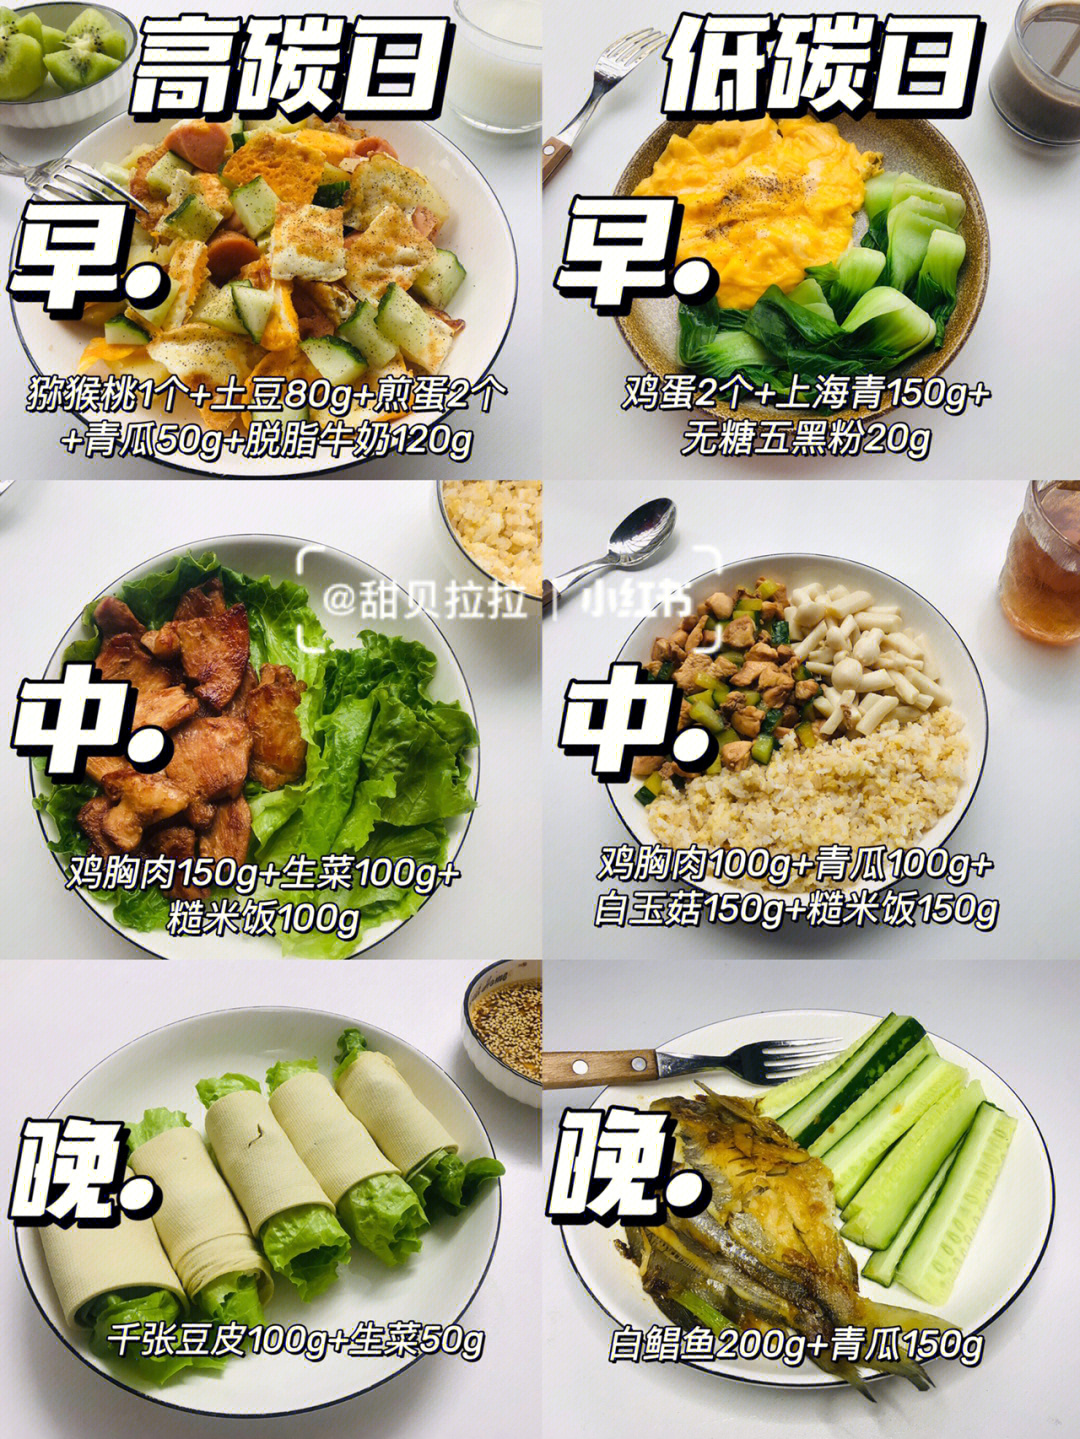 春季三餐食谱图片